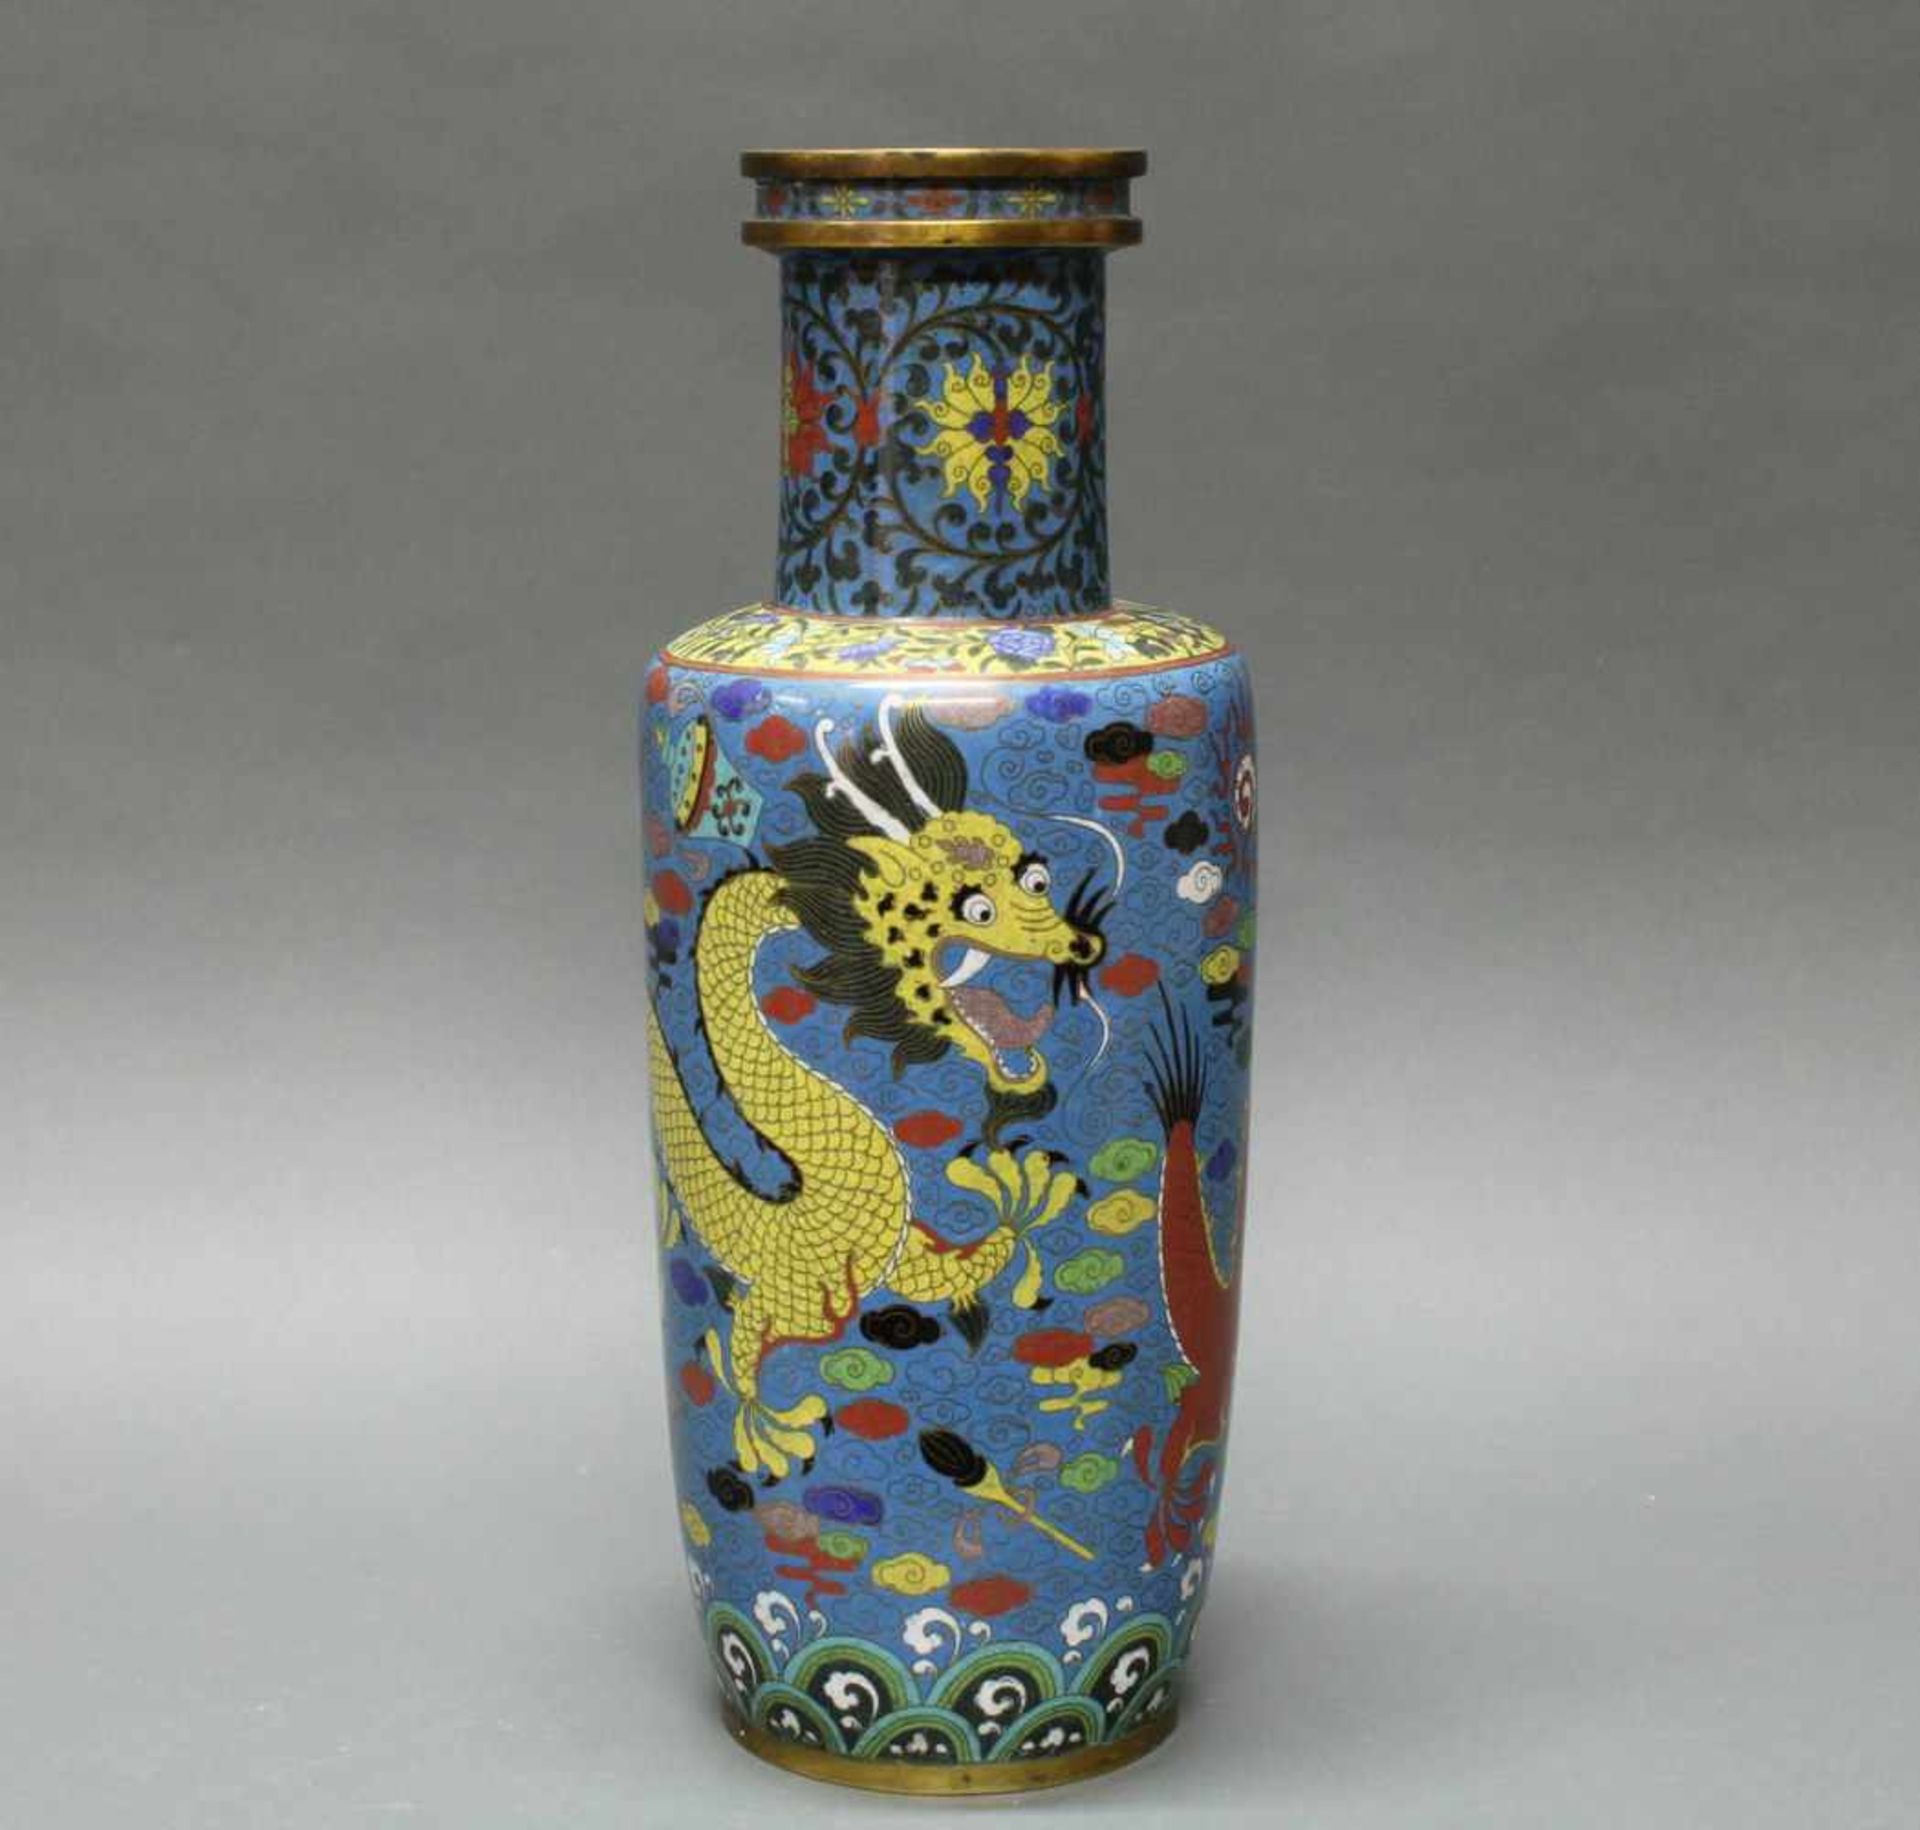 Vase, China, um 1900, Cloisonné, um den zylindrischen Korpus ein gelber und ein roter Drache - Bild 2 aus 4